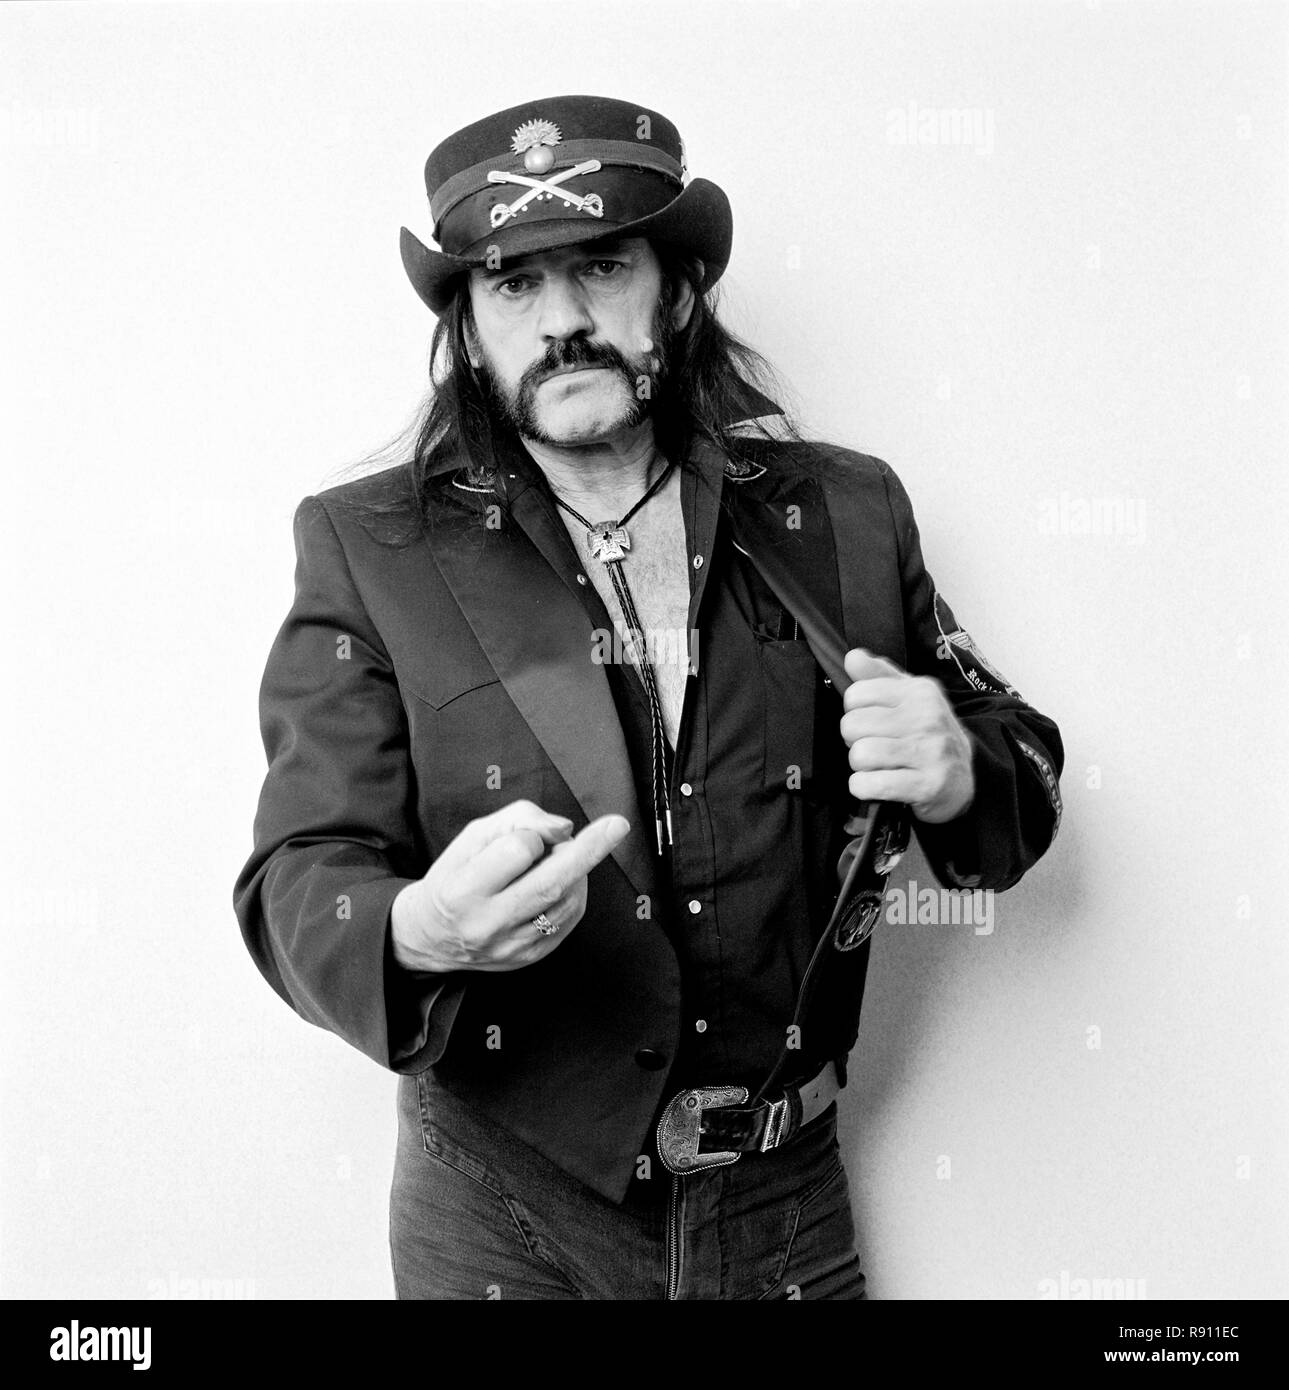 Lemmy kilmister lemmy Banque d'images noir et blanc - Alamy